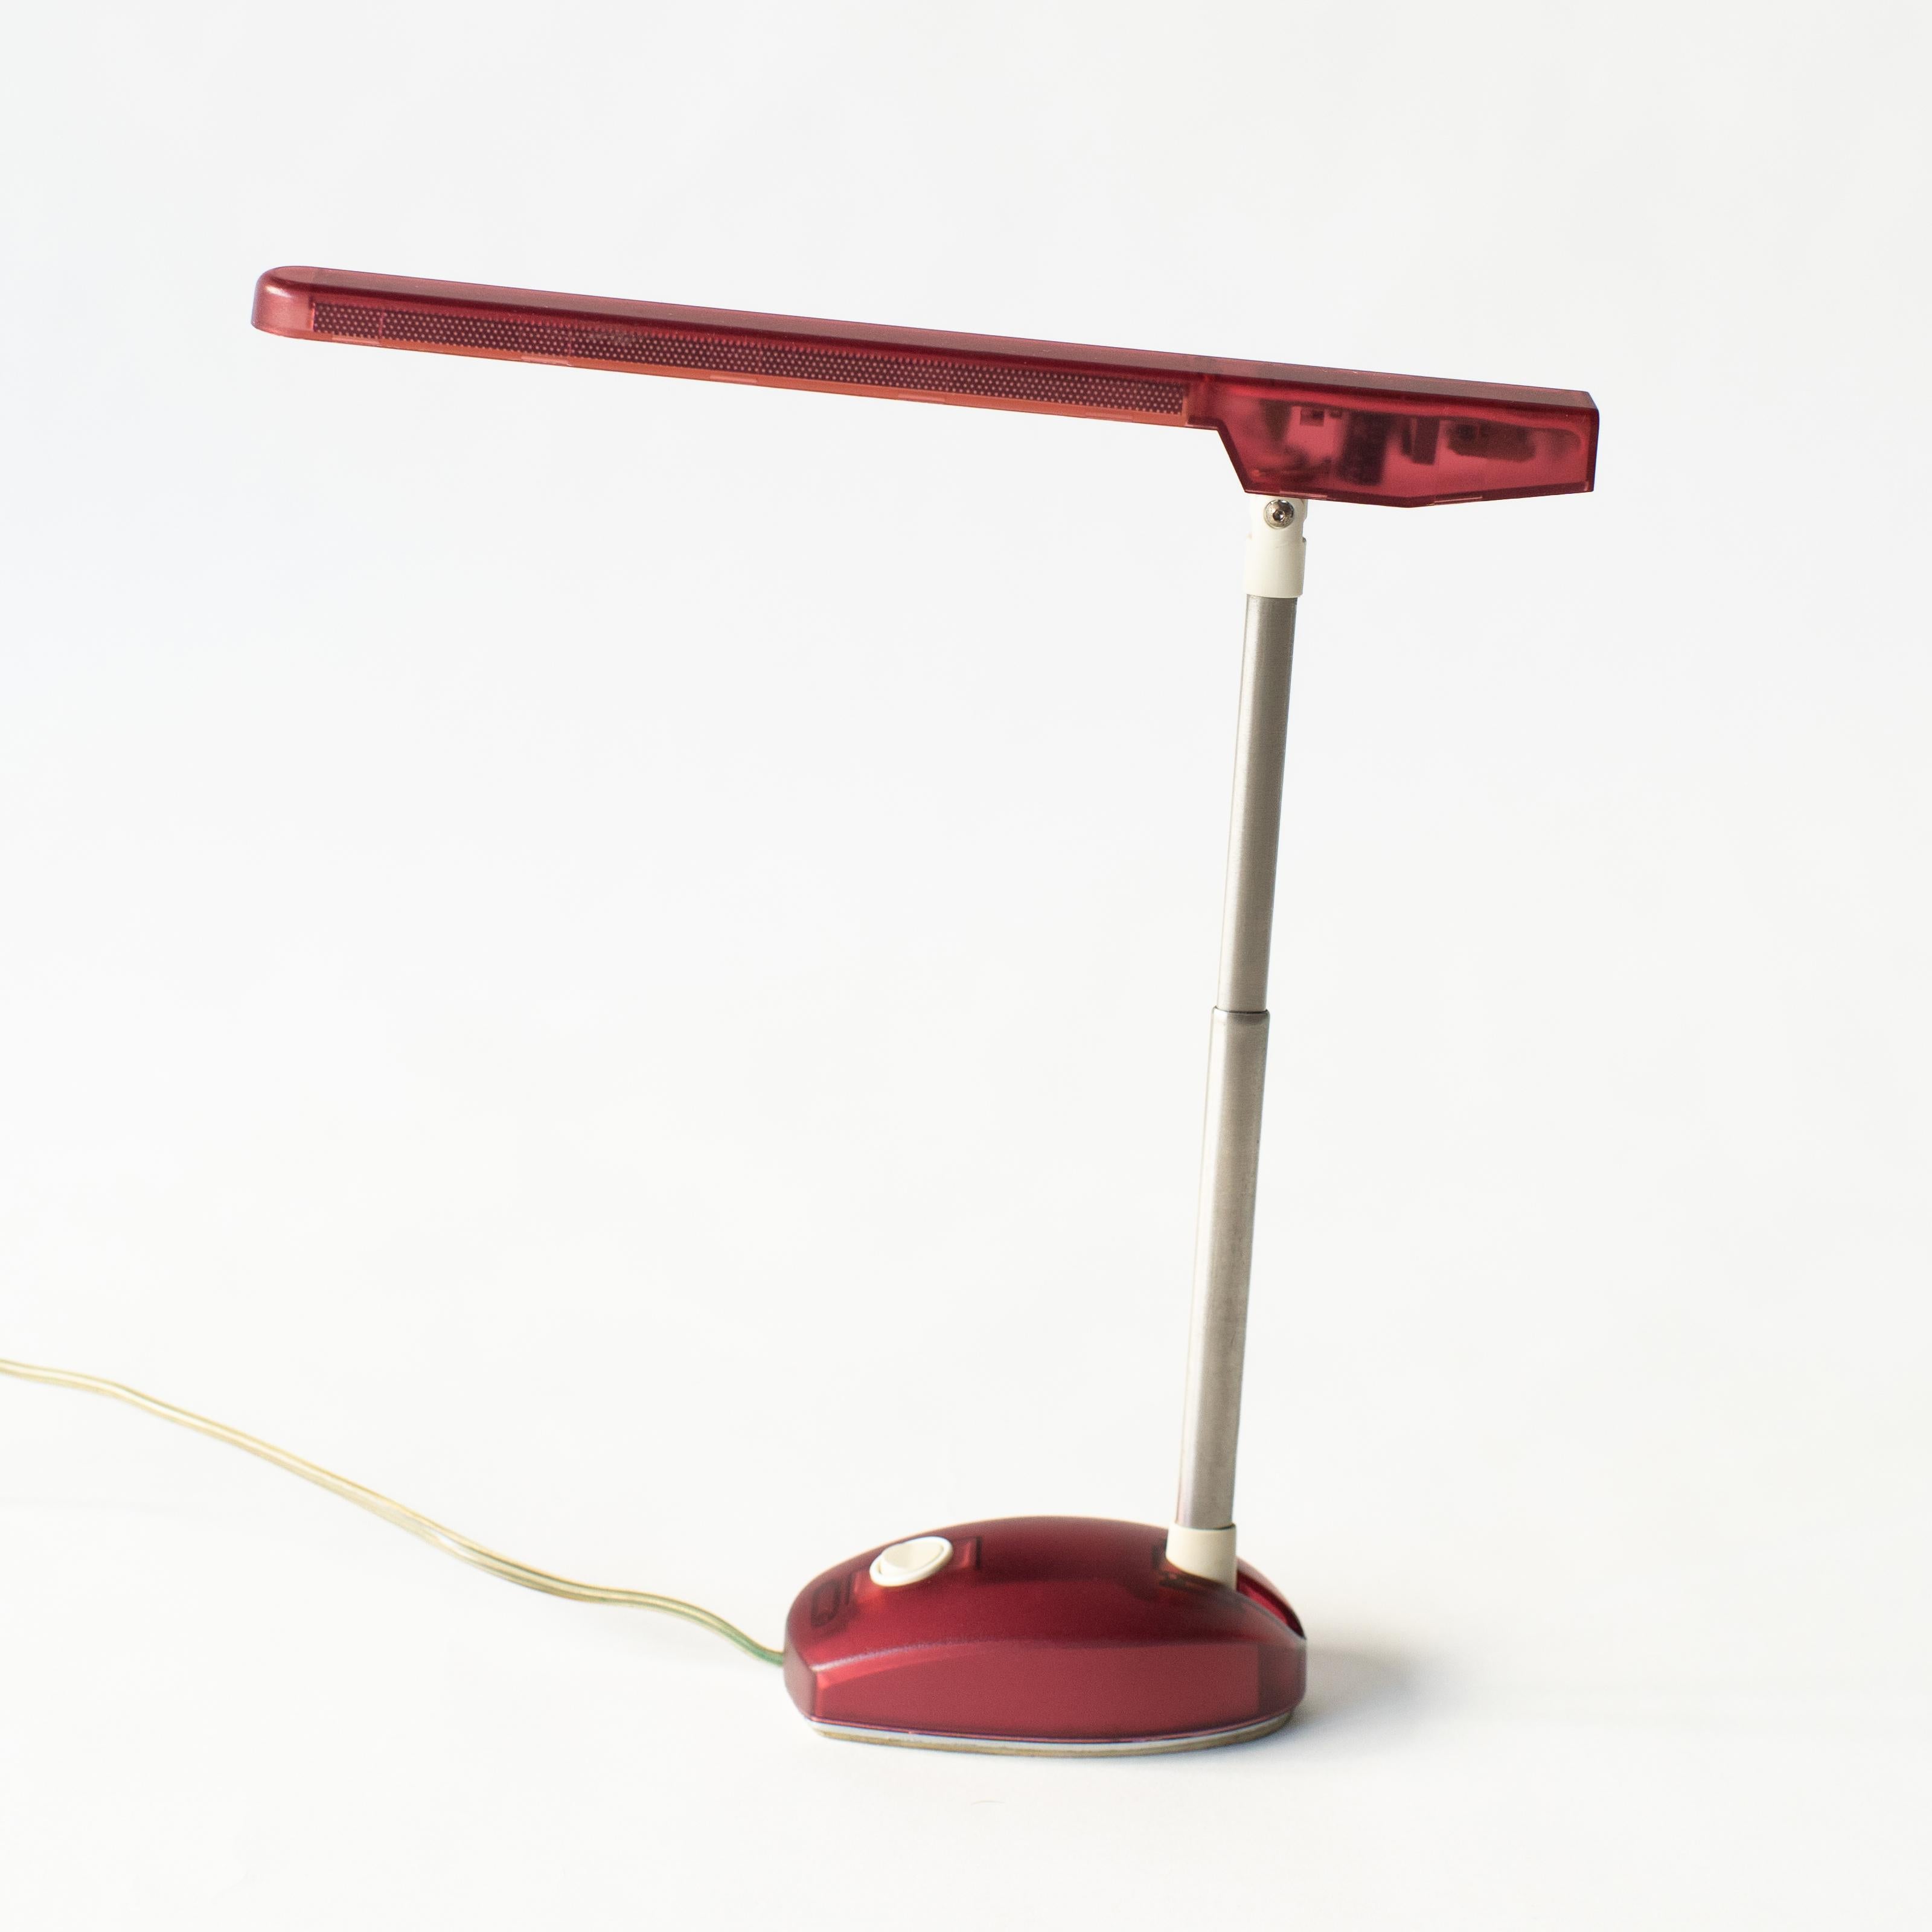 Lampe de bureau avec corps coloré semi-transparent.  Il a été publié à la fin des années 90 par Artemide. Il est évident qu'il a été influencé par la première génération d'iMac sortie en 1997. La couleur est rouge. À l'époque, il existait six